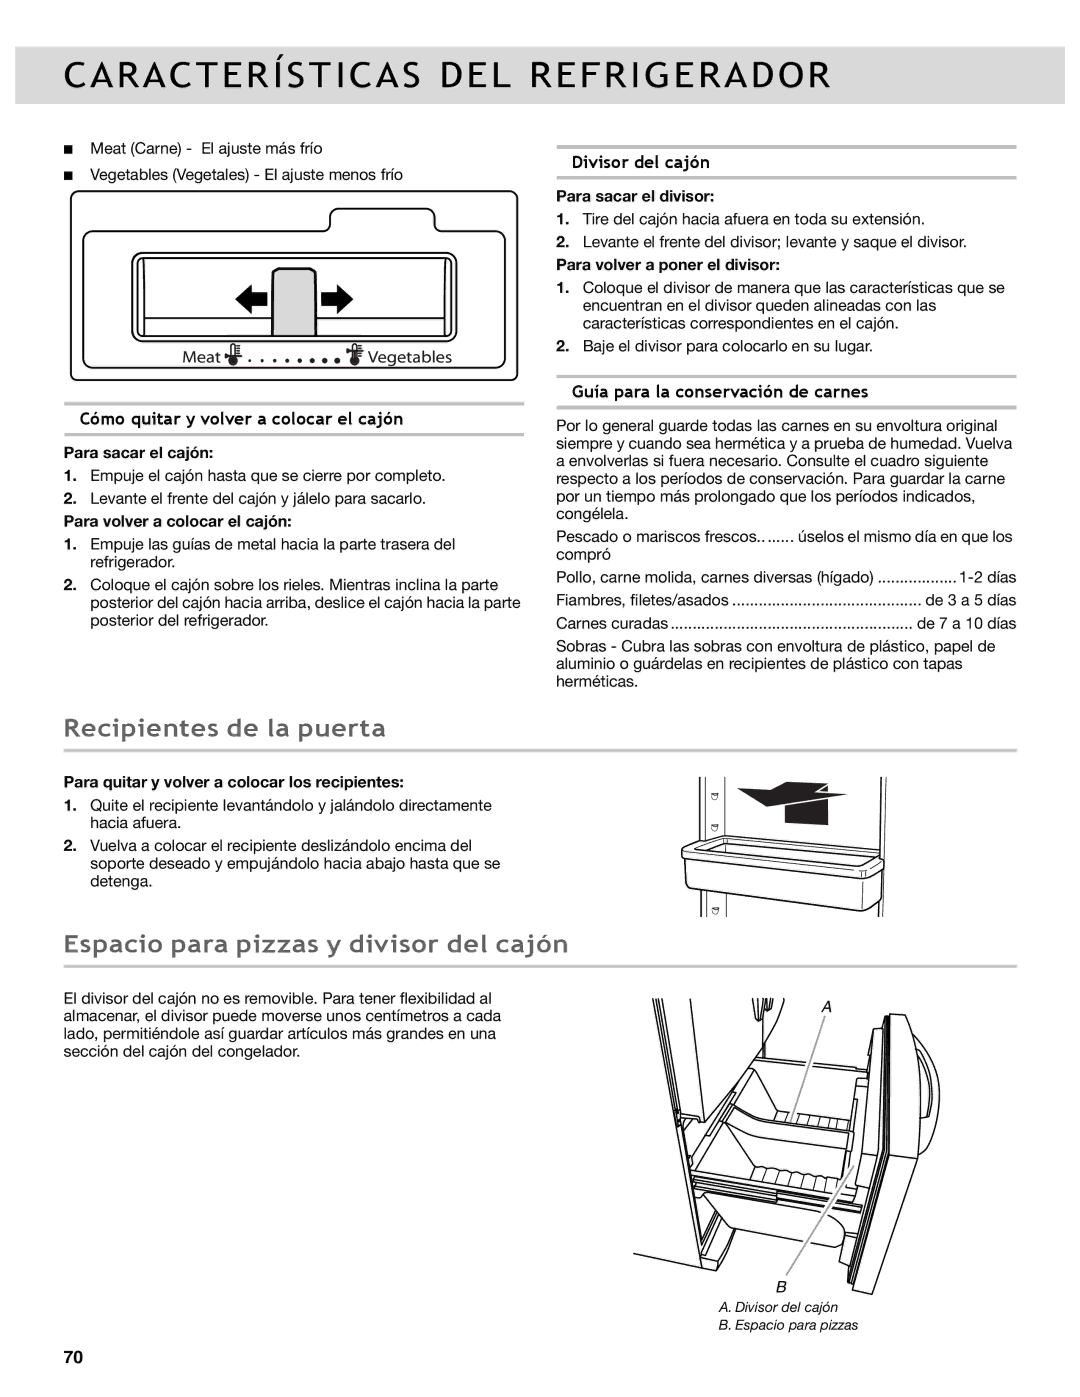 Whirlpool WRF989SDAE, WRF736SDAB manual Recipientes de la puerta, Espacio para pizzas y divisor del cajón, Divisor del cajón 